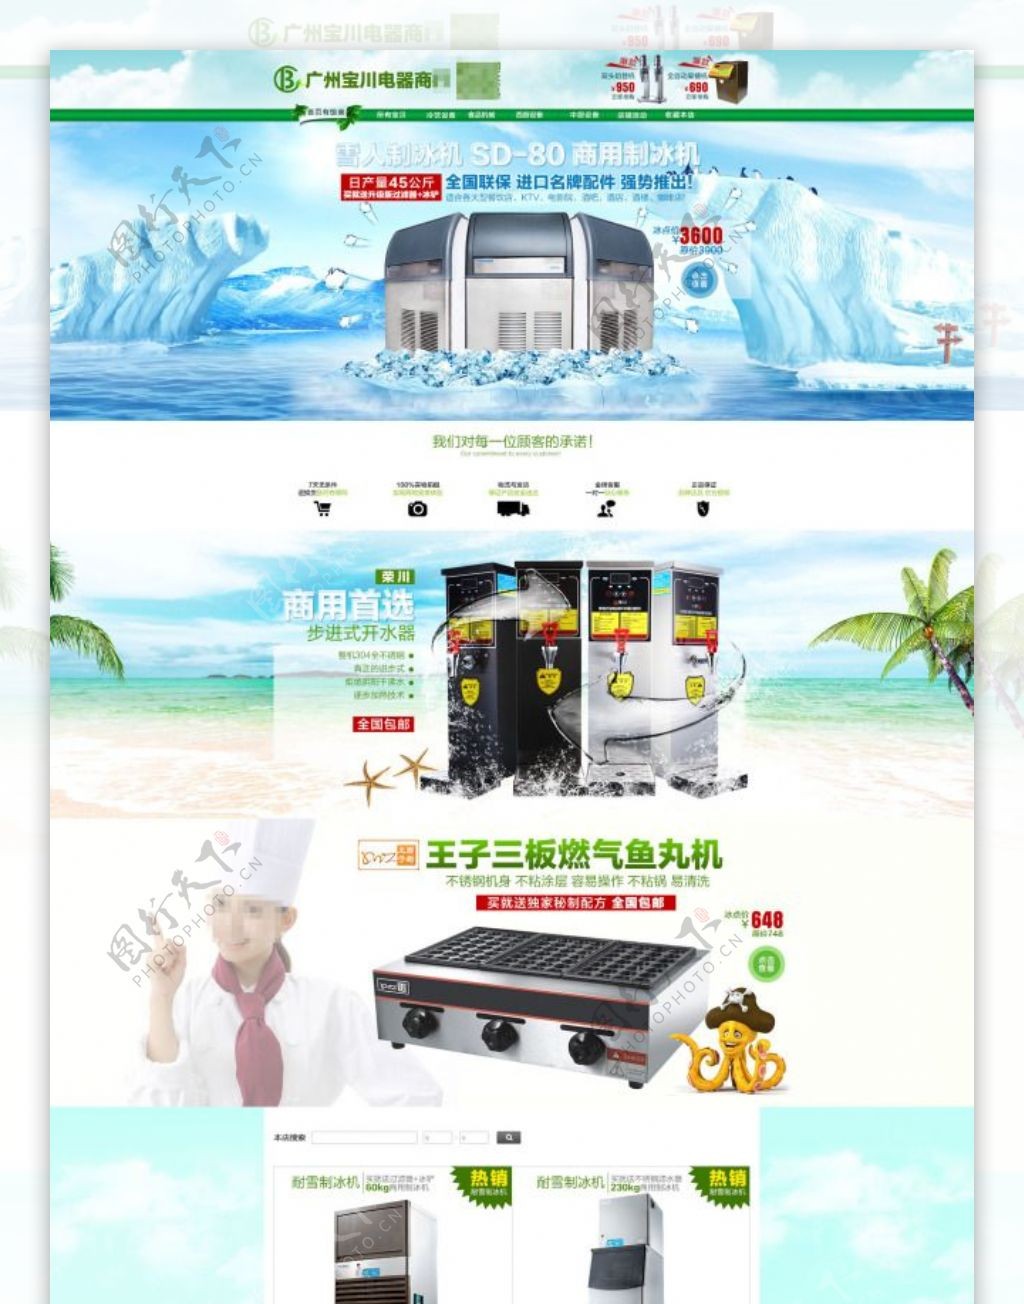 品牌商用制冰机天猫店铺宣传海报